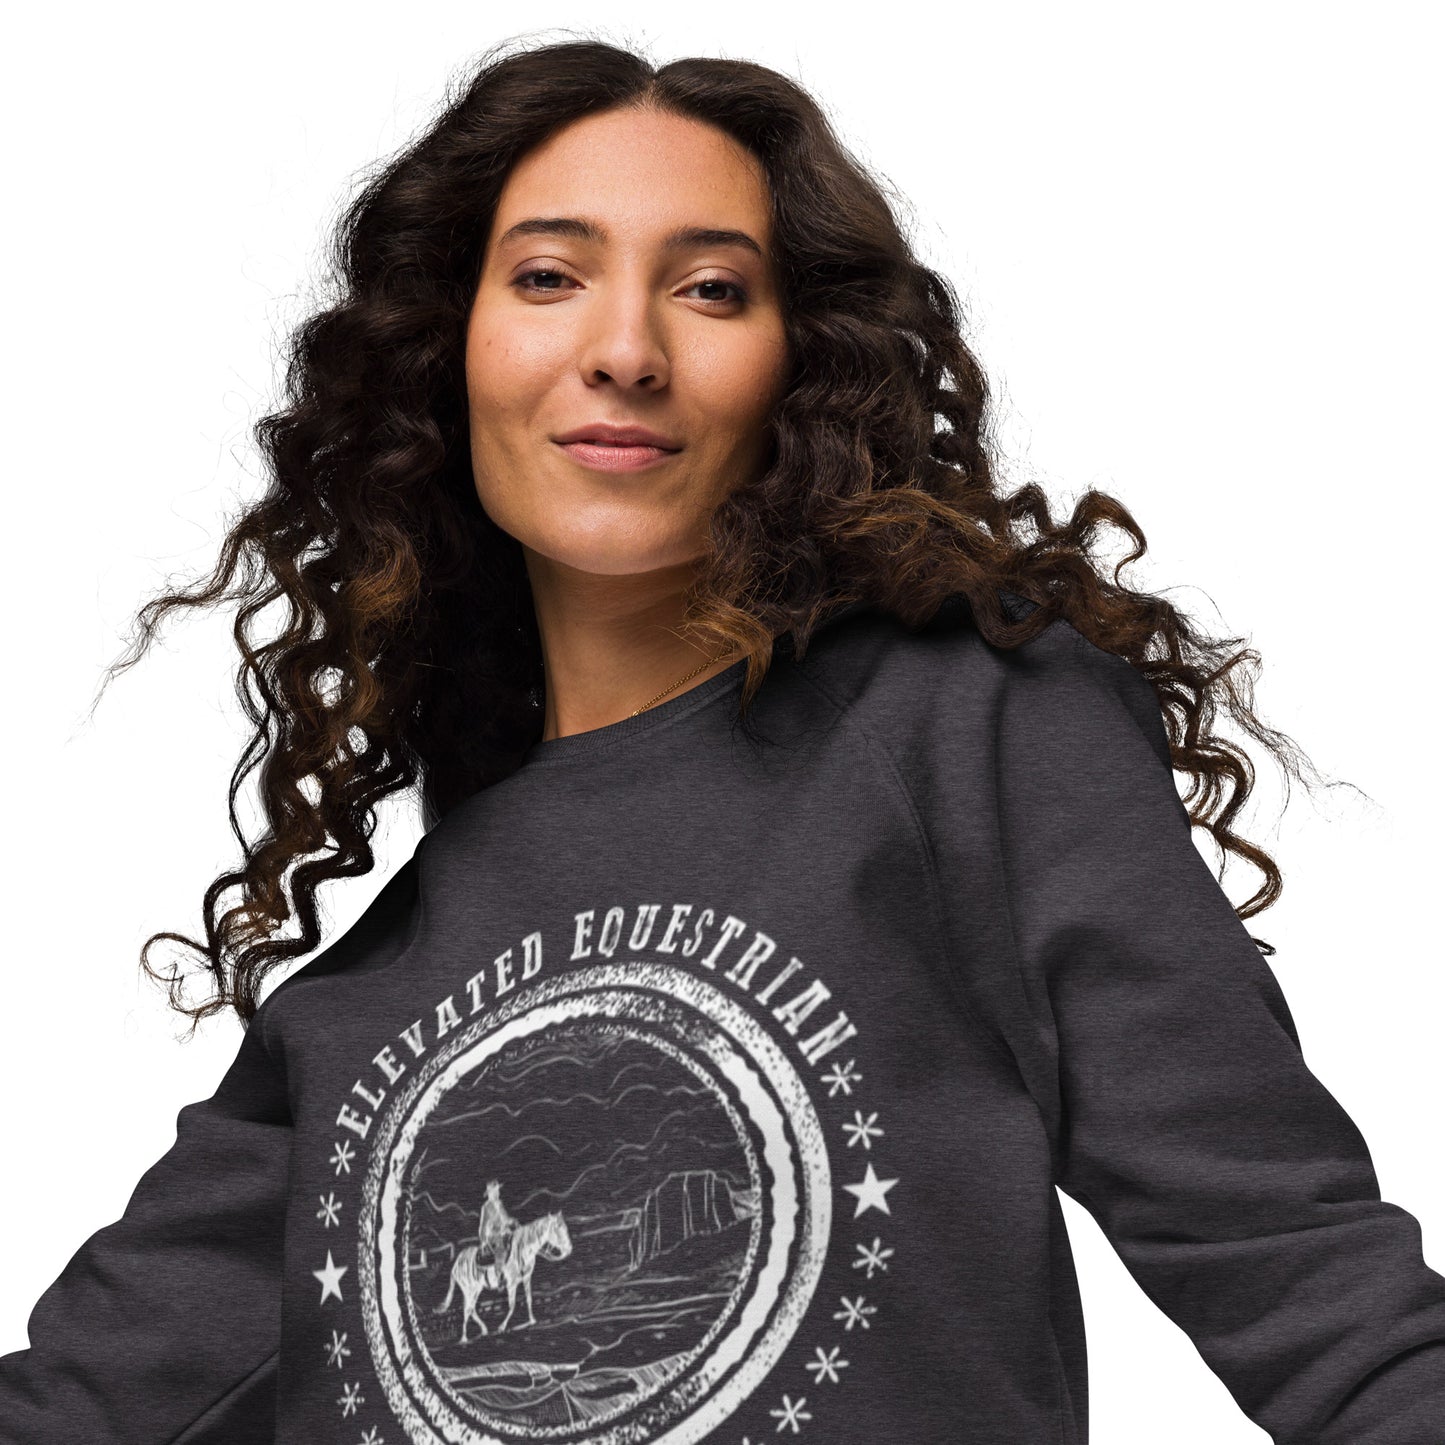 Elevated Equestrian Riding Club Charcoal Grey Unisex Organic Crewneck Sweatshirt